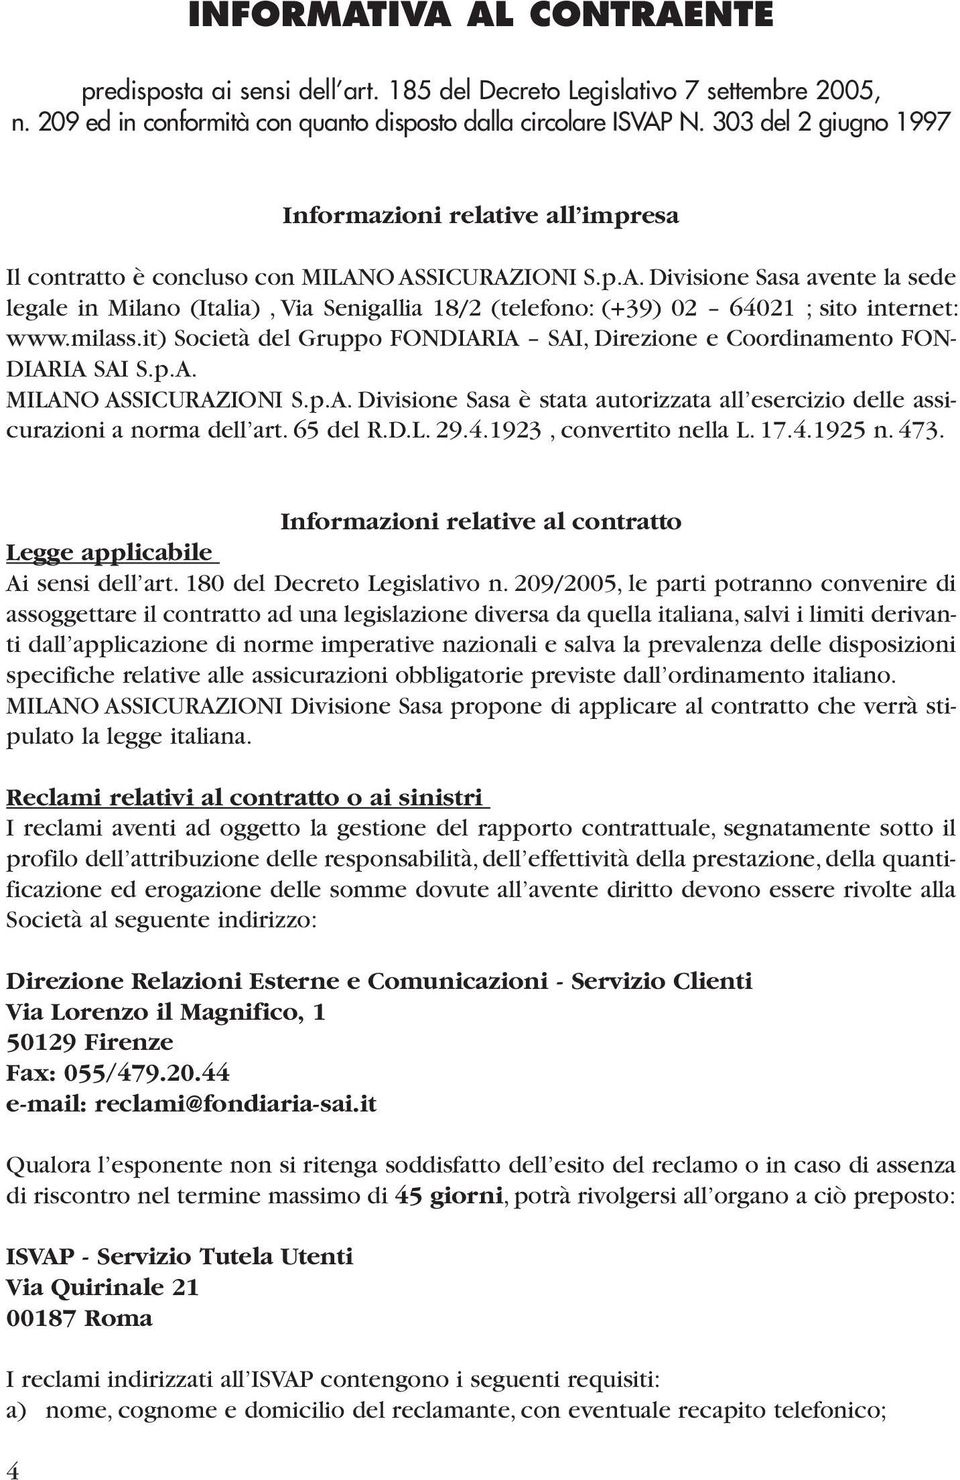 O ASSICURAZIONI S.p.A. Divisione Sasa avente la sede legale in Milano (Italia), Via Senigallia 18/2 (telefono: (+39) 02 64021 ; sito internet: www.milass.